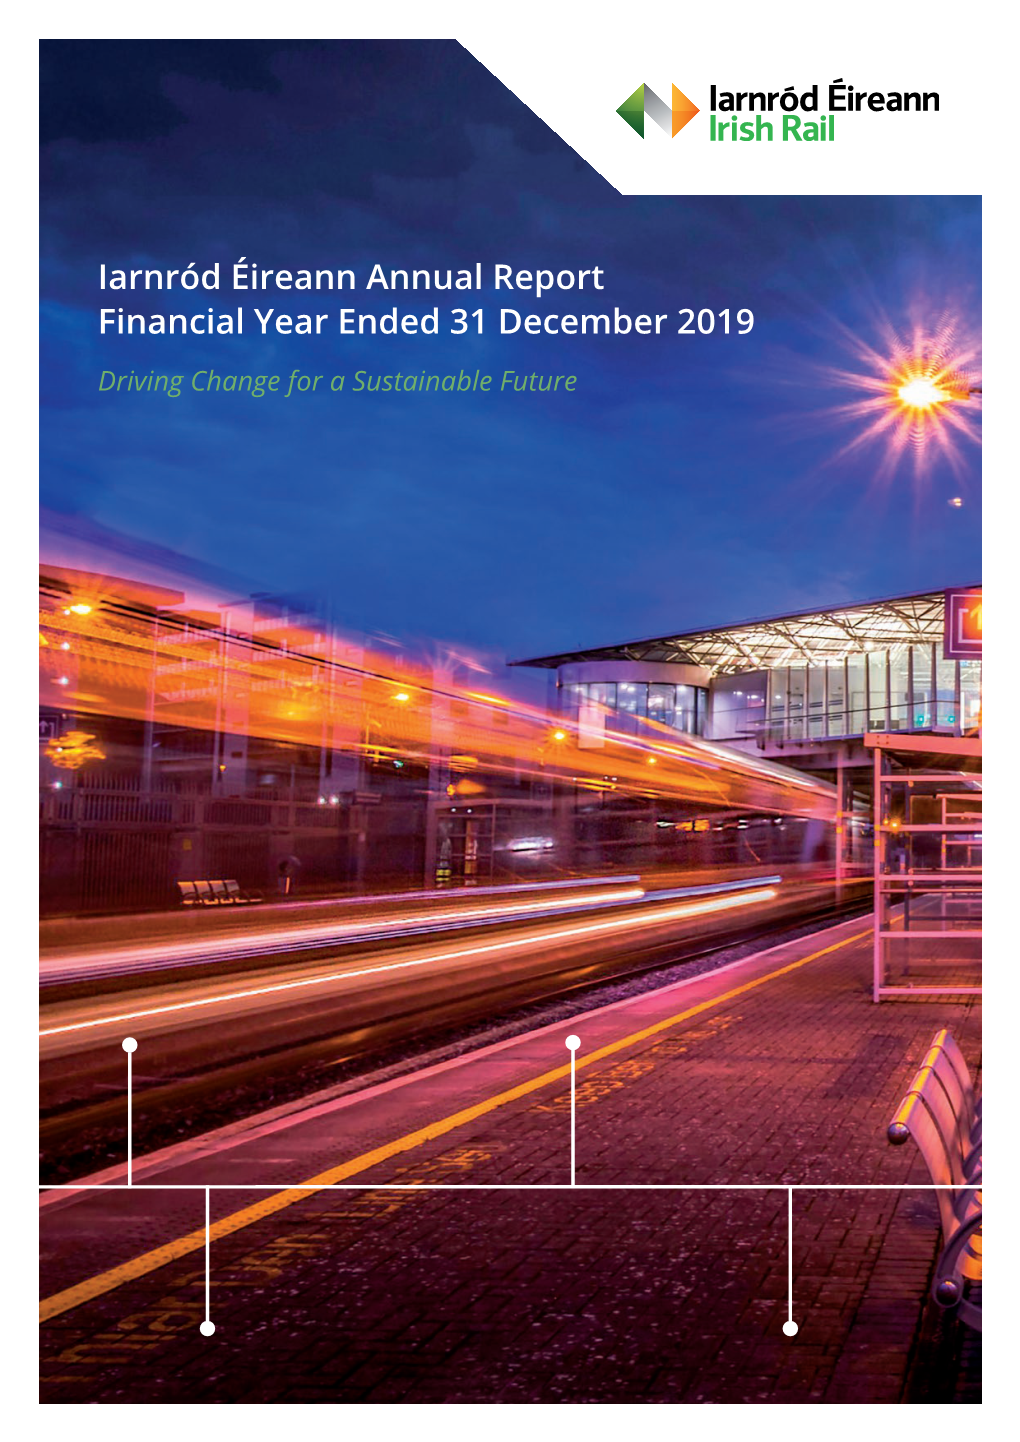 Iarnród Éireann Annual Report 2019